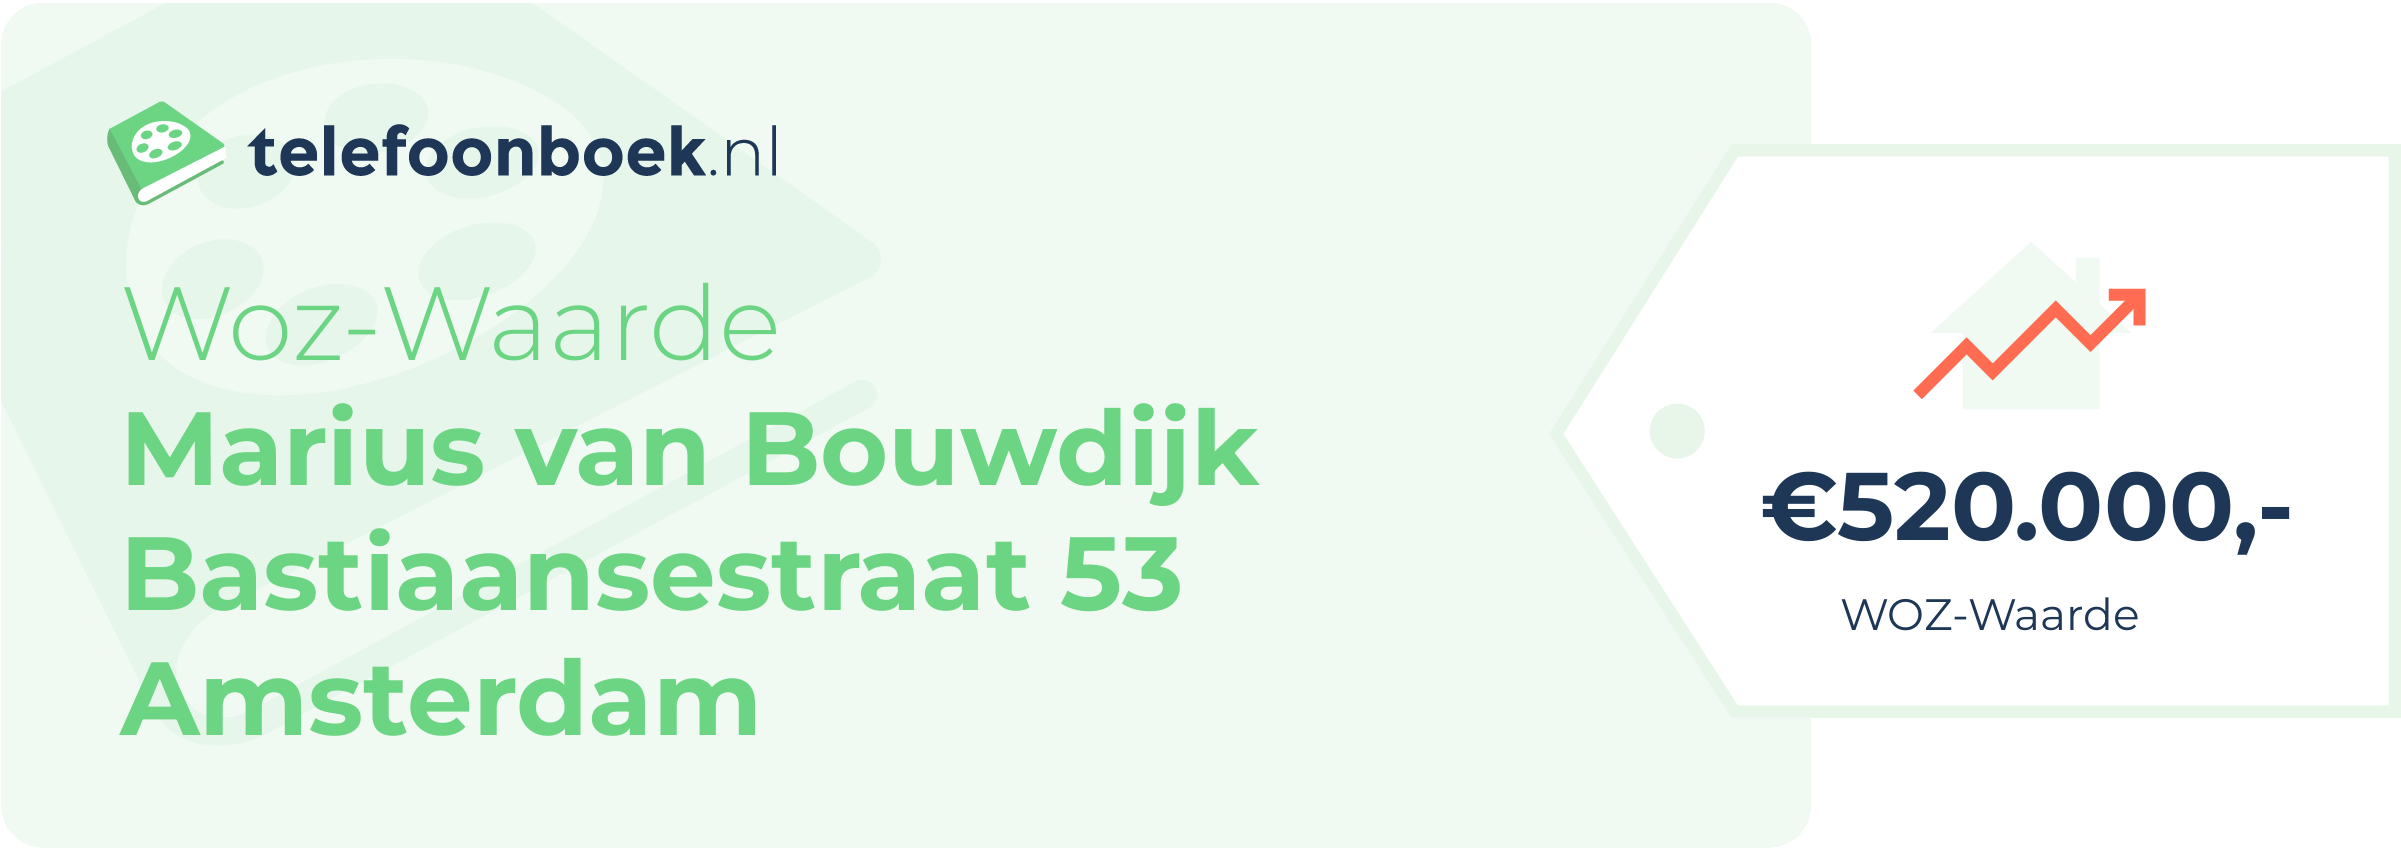 WOZ-waarde Marius Van Bouwdijk Bastiaansestraat 53 Amsterdam